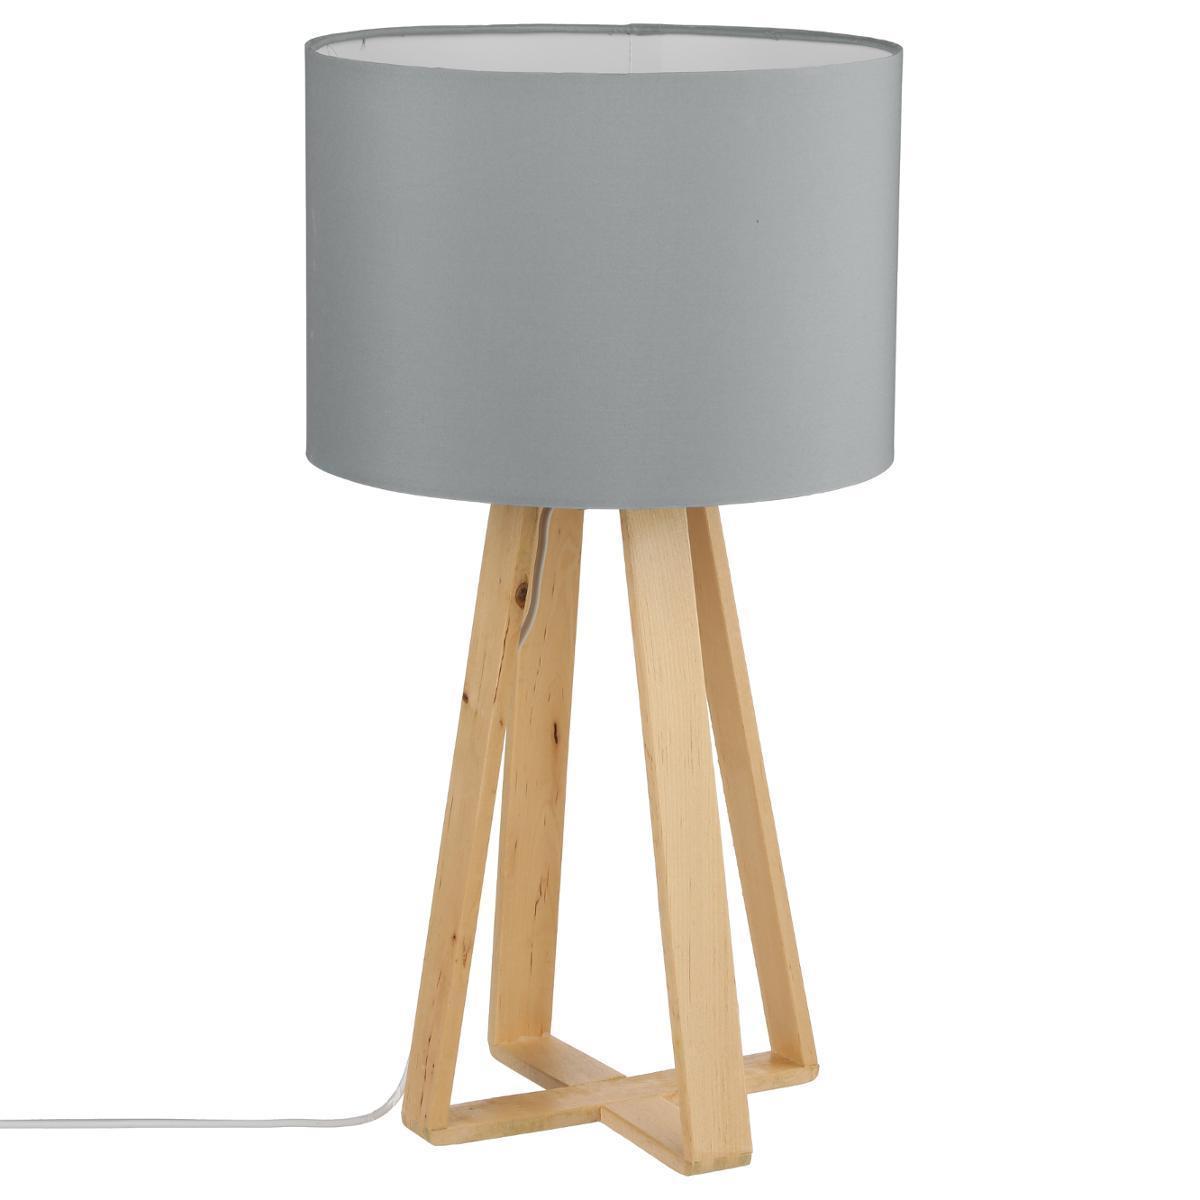 Lampe avec pied en bois - H 47.5 cm - Gris